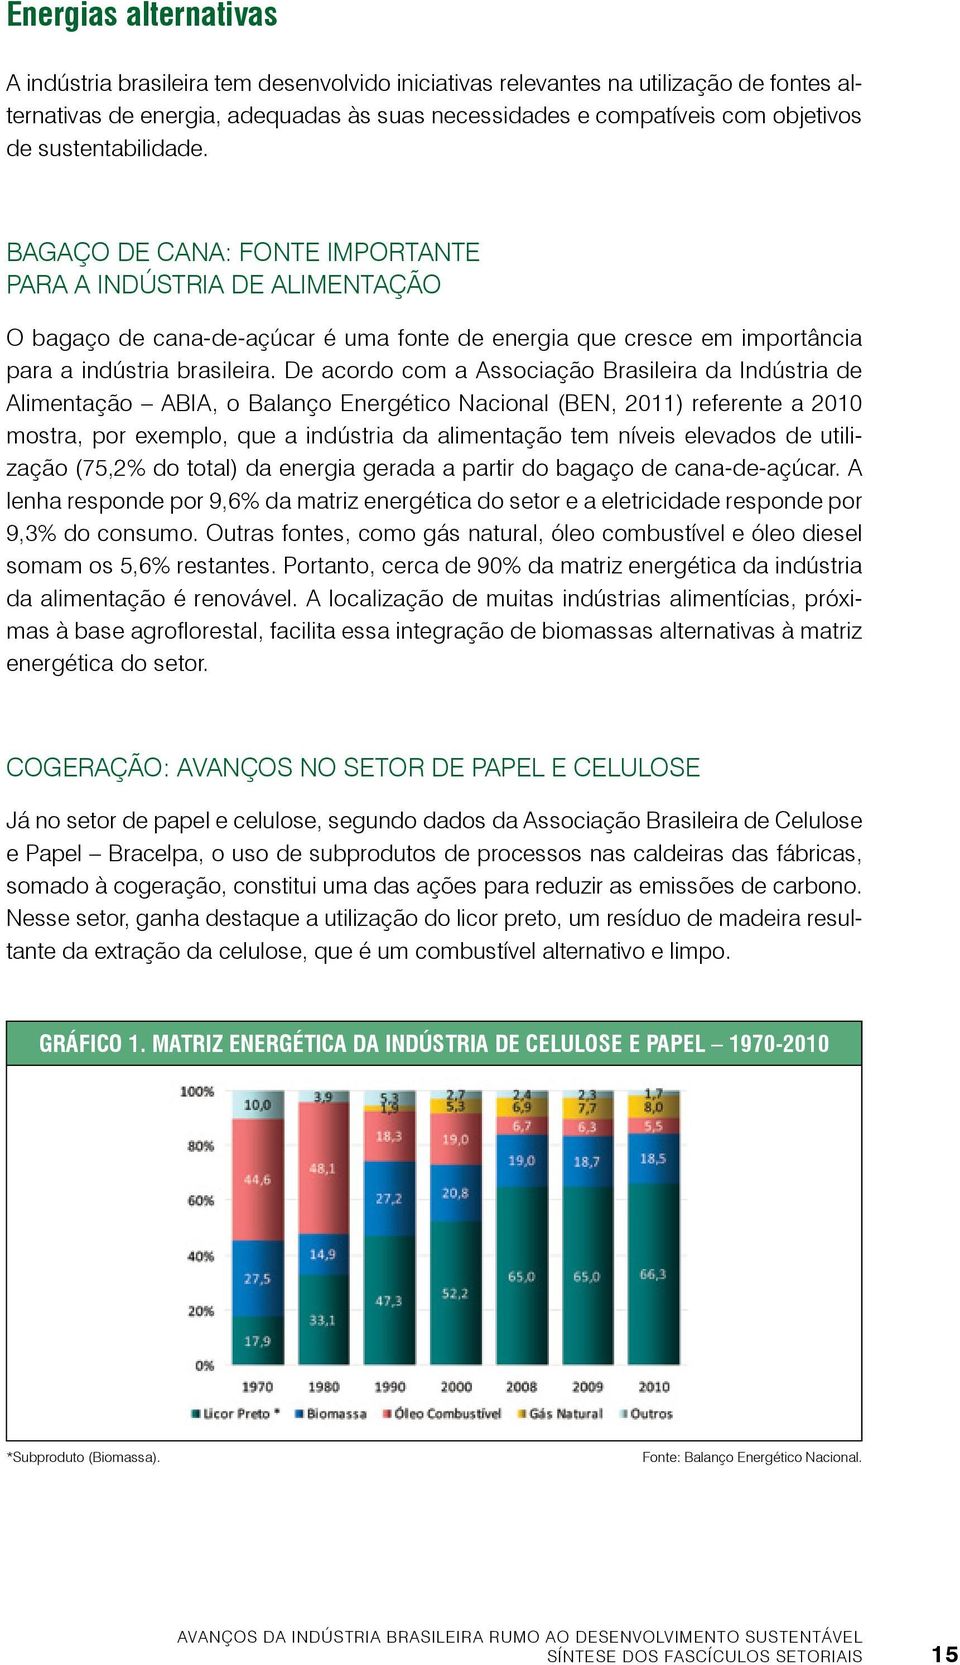 De acordo com a Associação Brasileira da Indústria de Alimentação ABIA, o Balanço Energético Nacional (BEN, 2011) referente a 2010 mostra, por exemplo, que a indústria da alimentação tem níveis